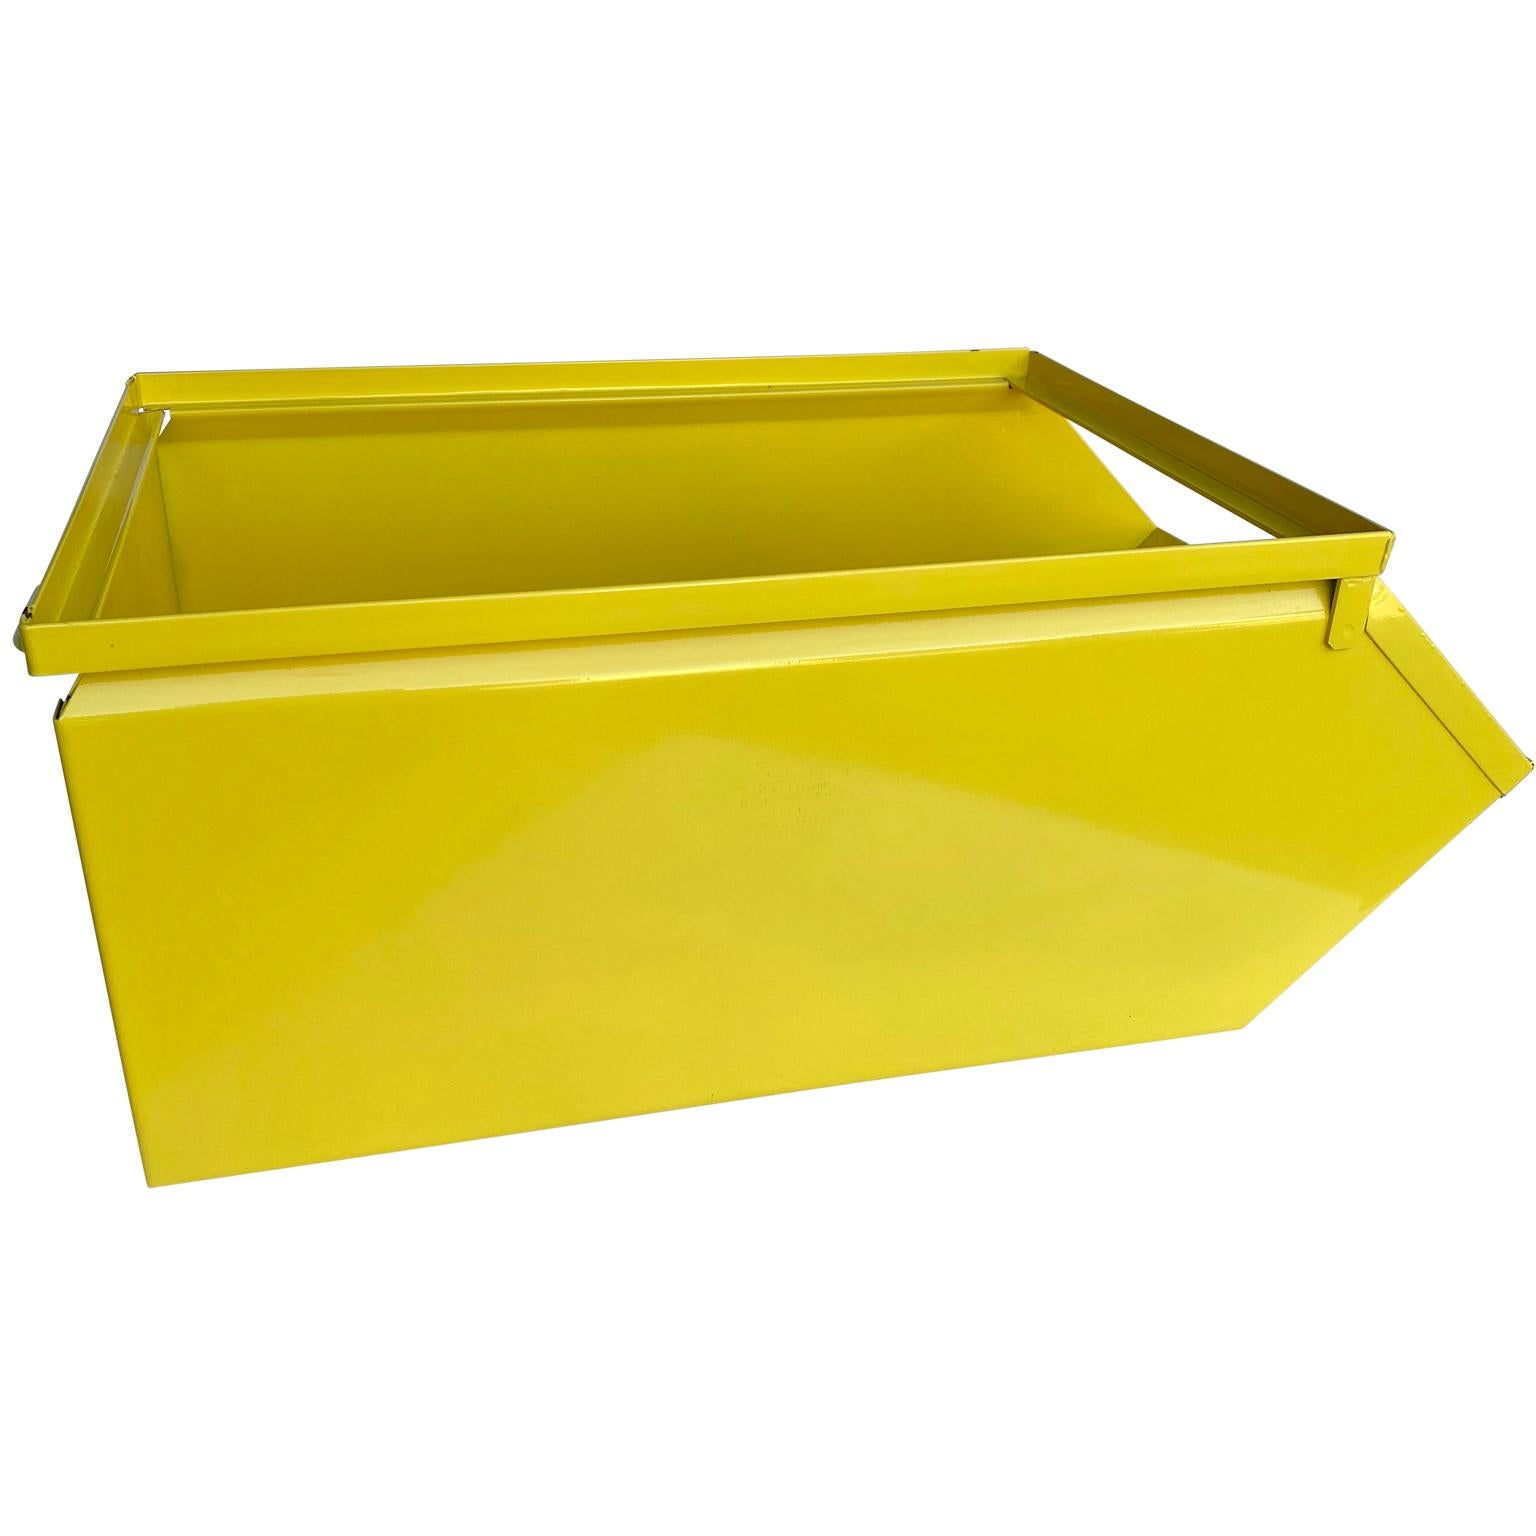 Américain Collection de grandes boîtes industrielles en métal jaune soleil revêtues de poudre en vente